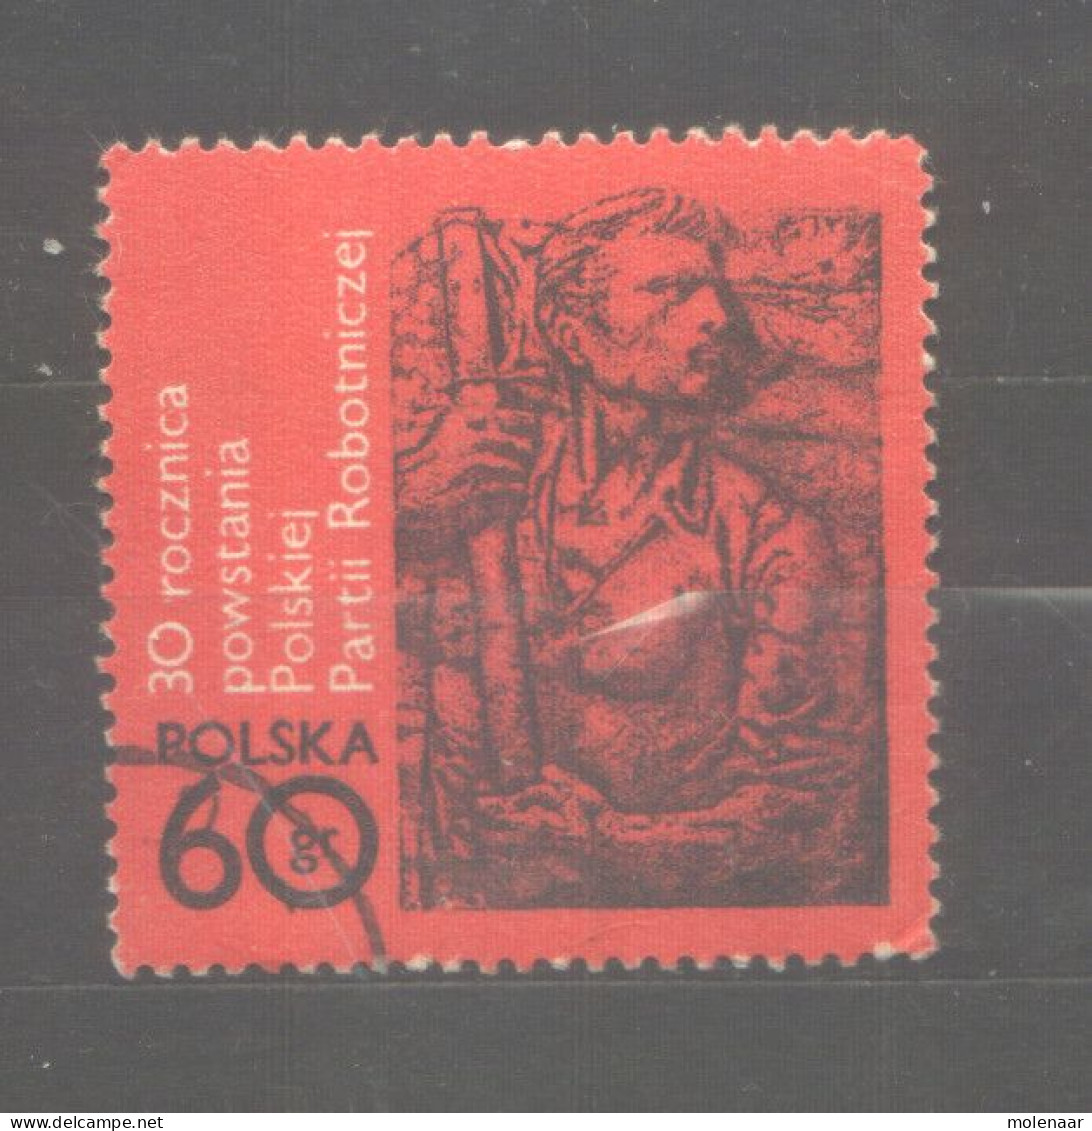 Postzegels > Europa > Polen > 1944-.... Republiek > 1971-80 > Gebruikt 2138 (12063)12064 - Oblitérés